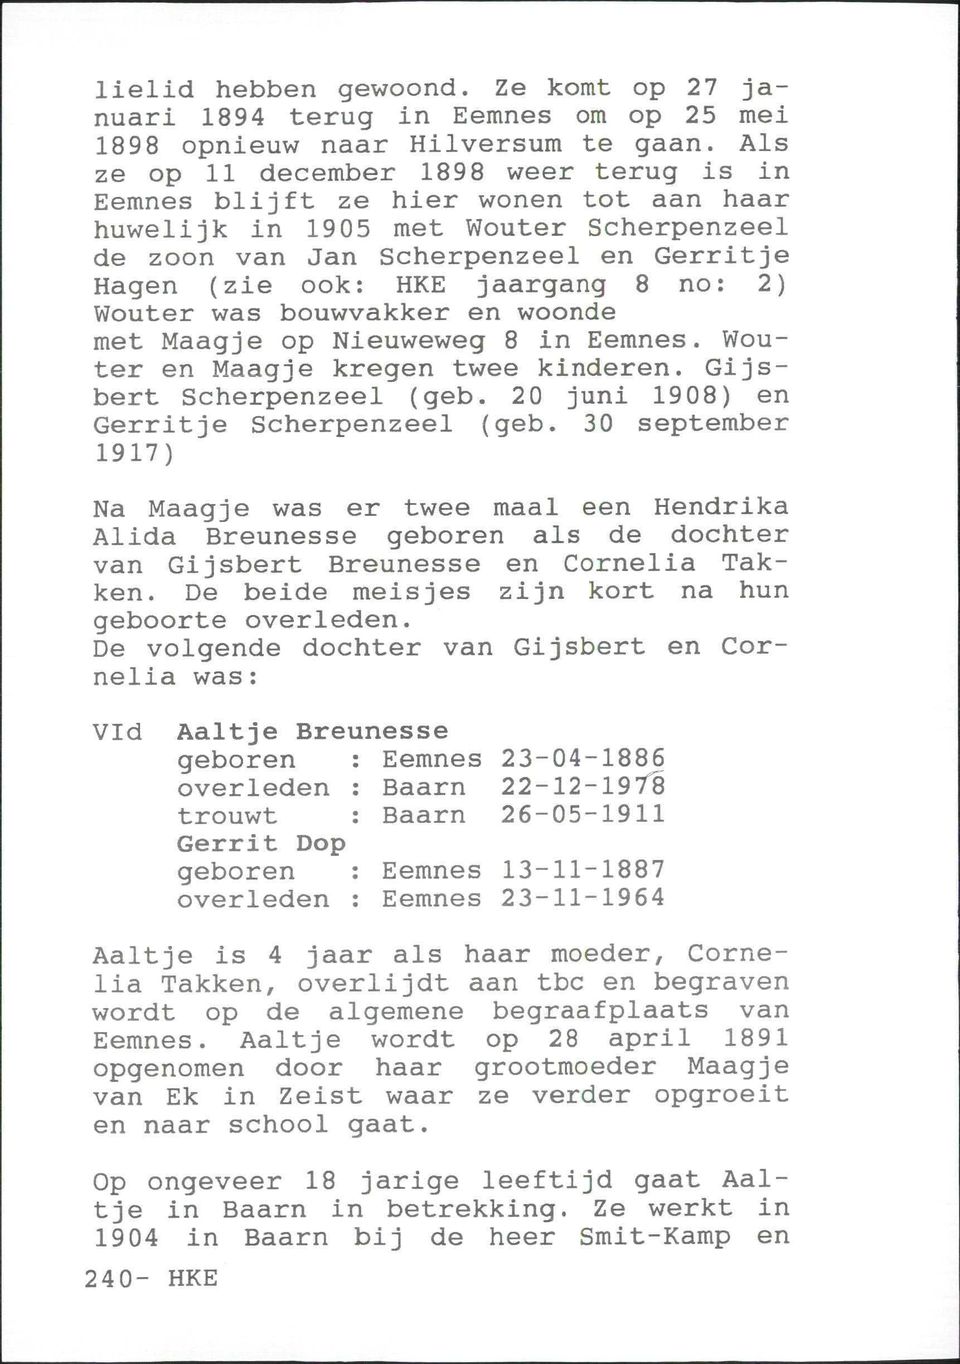 no: 2) Wouter was bouwvakker en woonde met Maagje op Nieuweweg 8 in Eemnes. Wouter en Maagje kregen twee kinderen. Gijsbert Scherpenzeel (geb. 20 juni 1908) en Gerritje Scherpenzeel (geb.